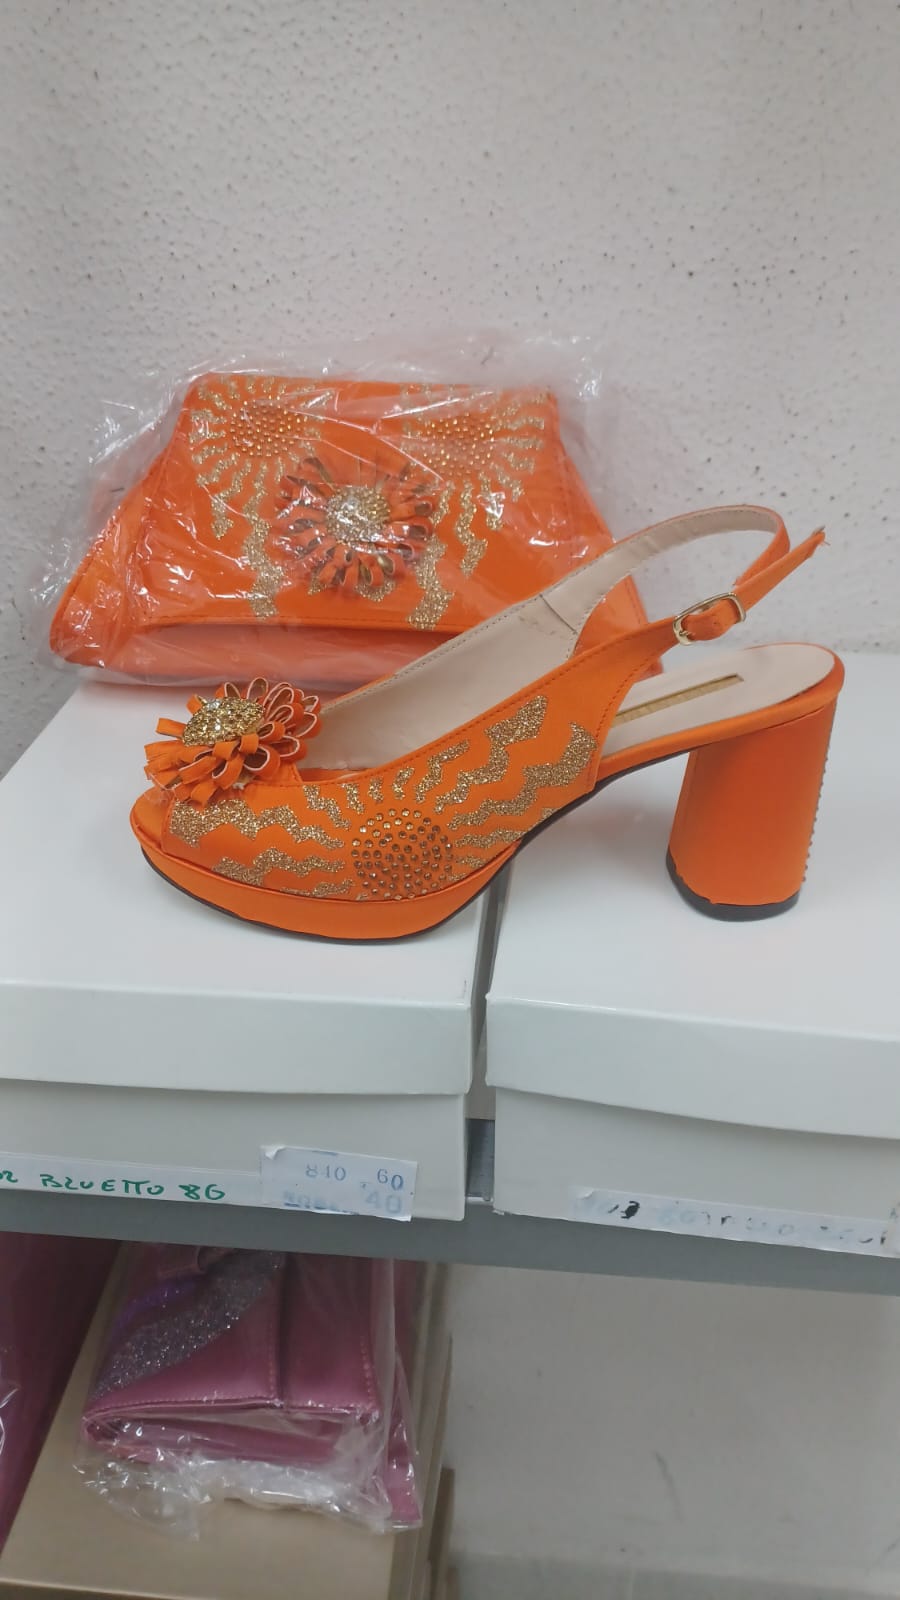 Beautiful Italian shoe set - Godshandfashion - Orange EUR 39/US 9